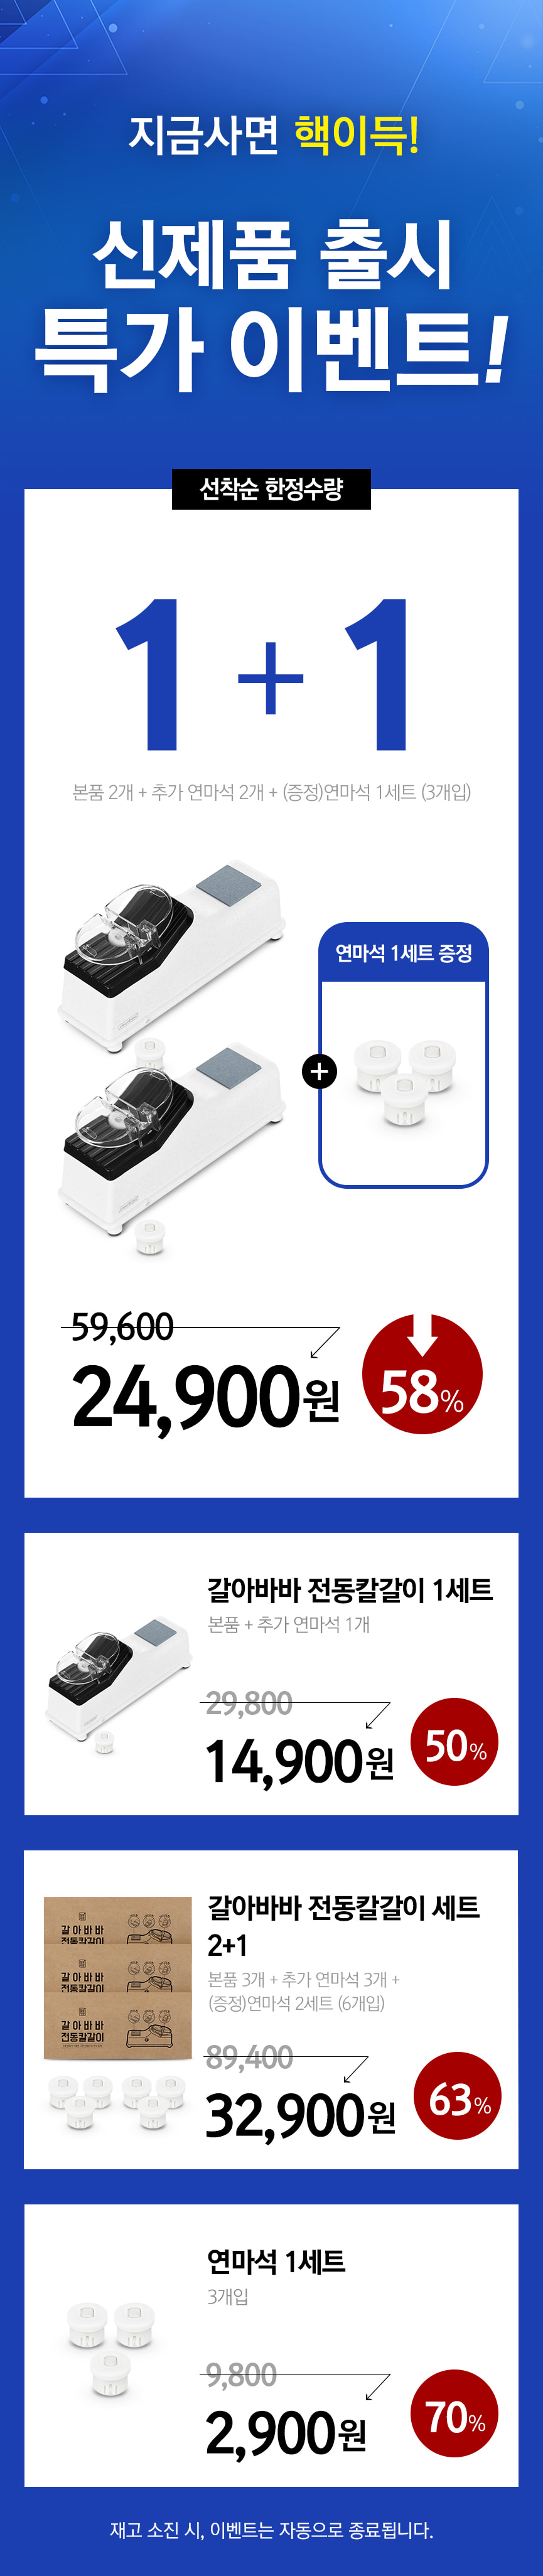 230430_증정추가_가격정보